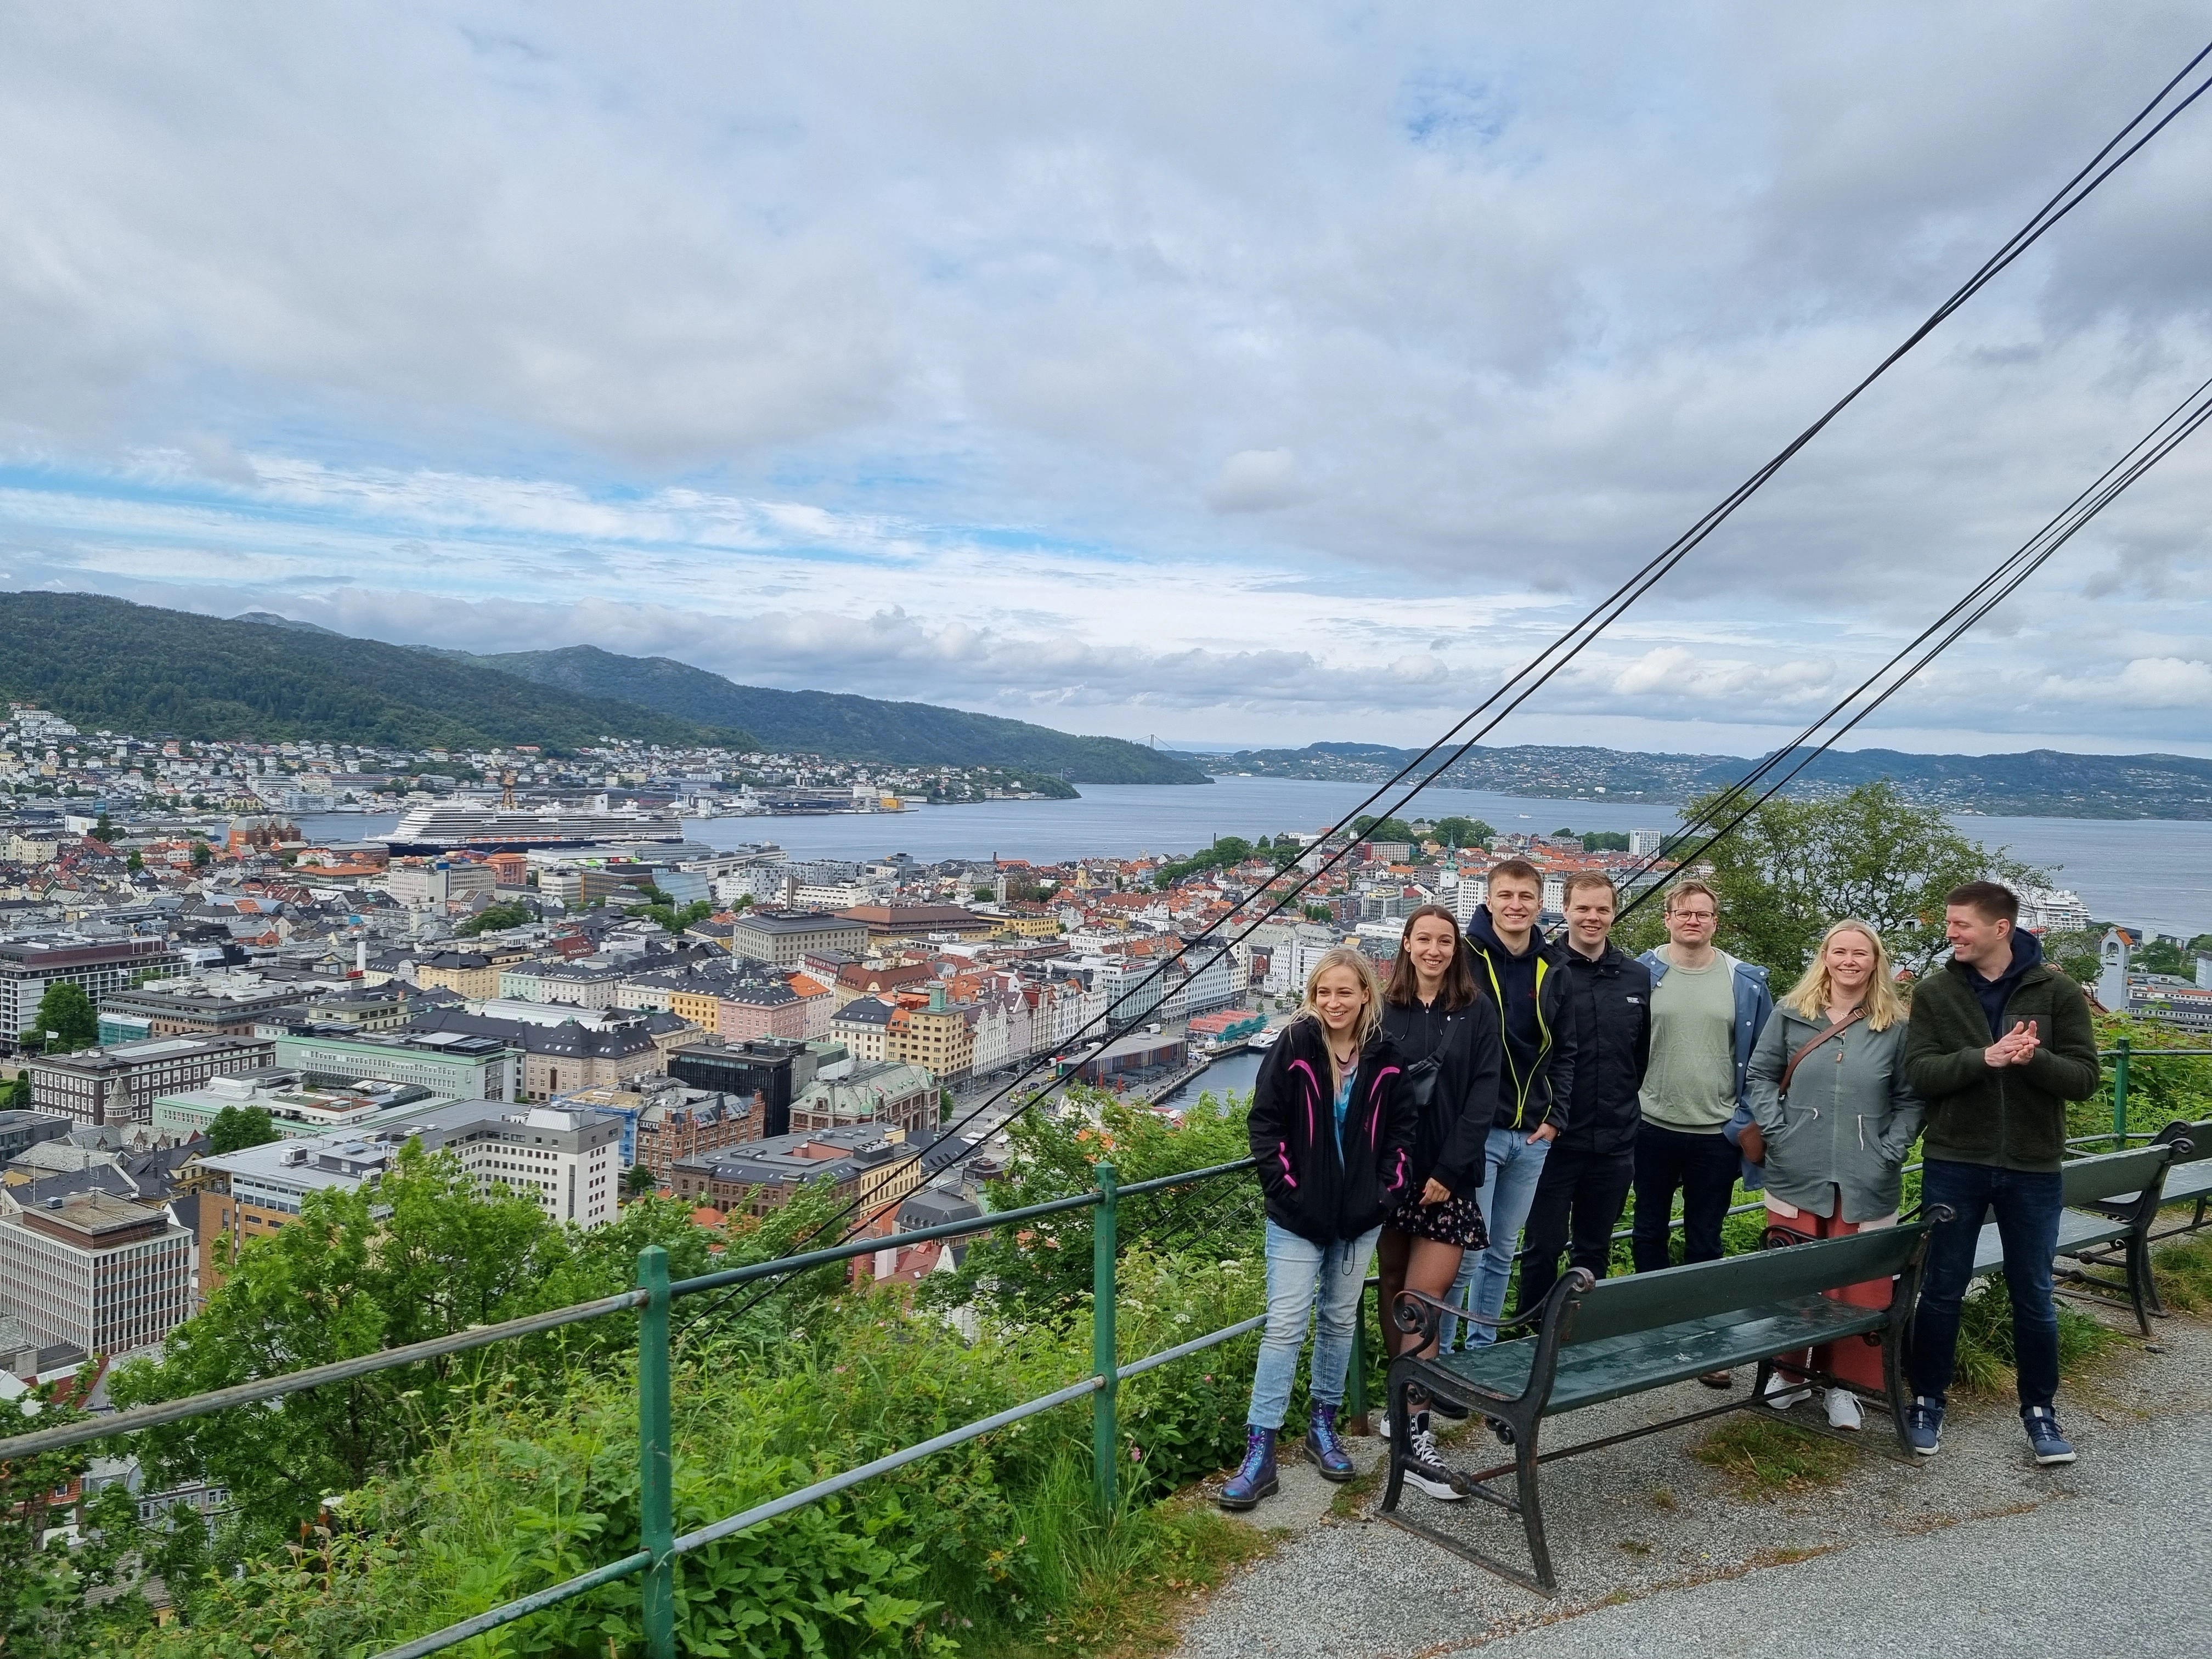 Bilde utover Bergen by med ansatte i Ilder i hovedfokus